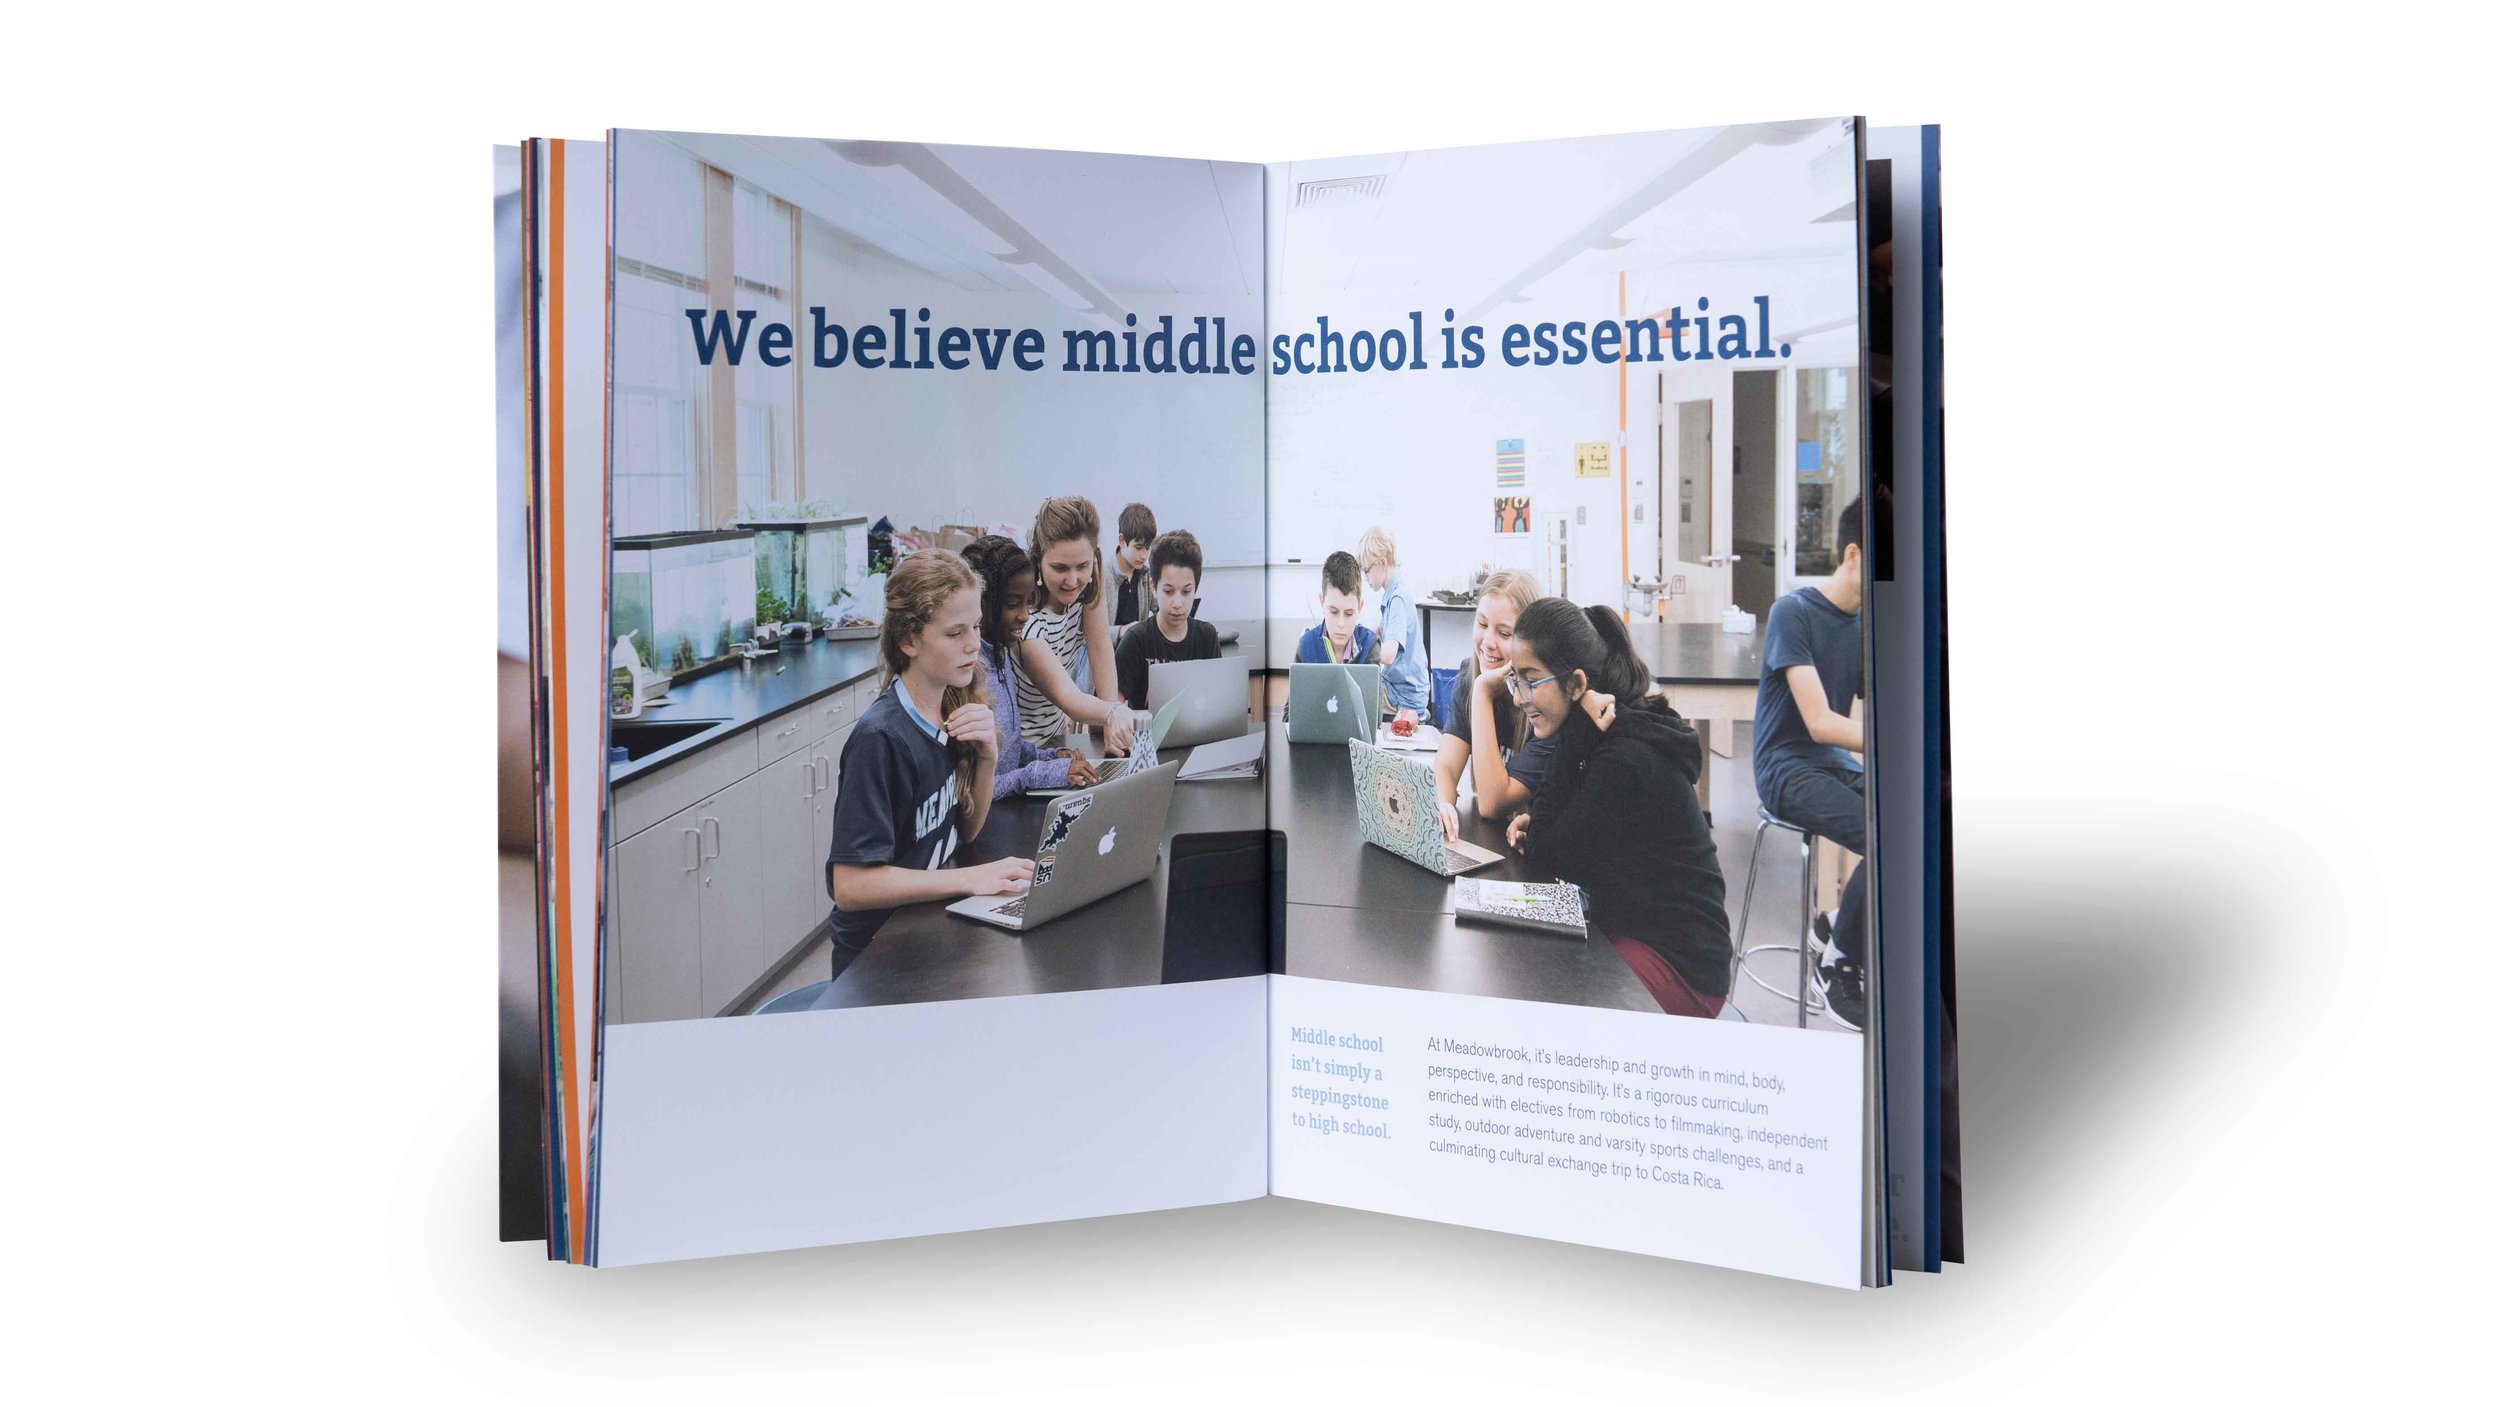 Meadowbrook-School-Creosote-Affects-Viewbook-9.jpg